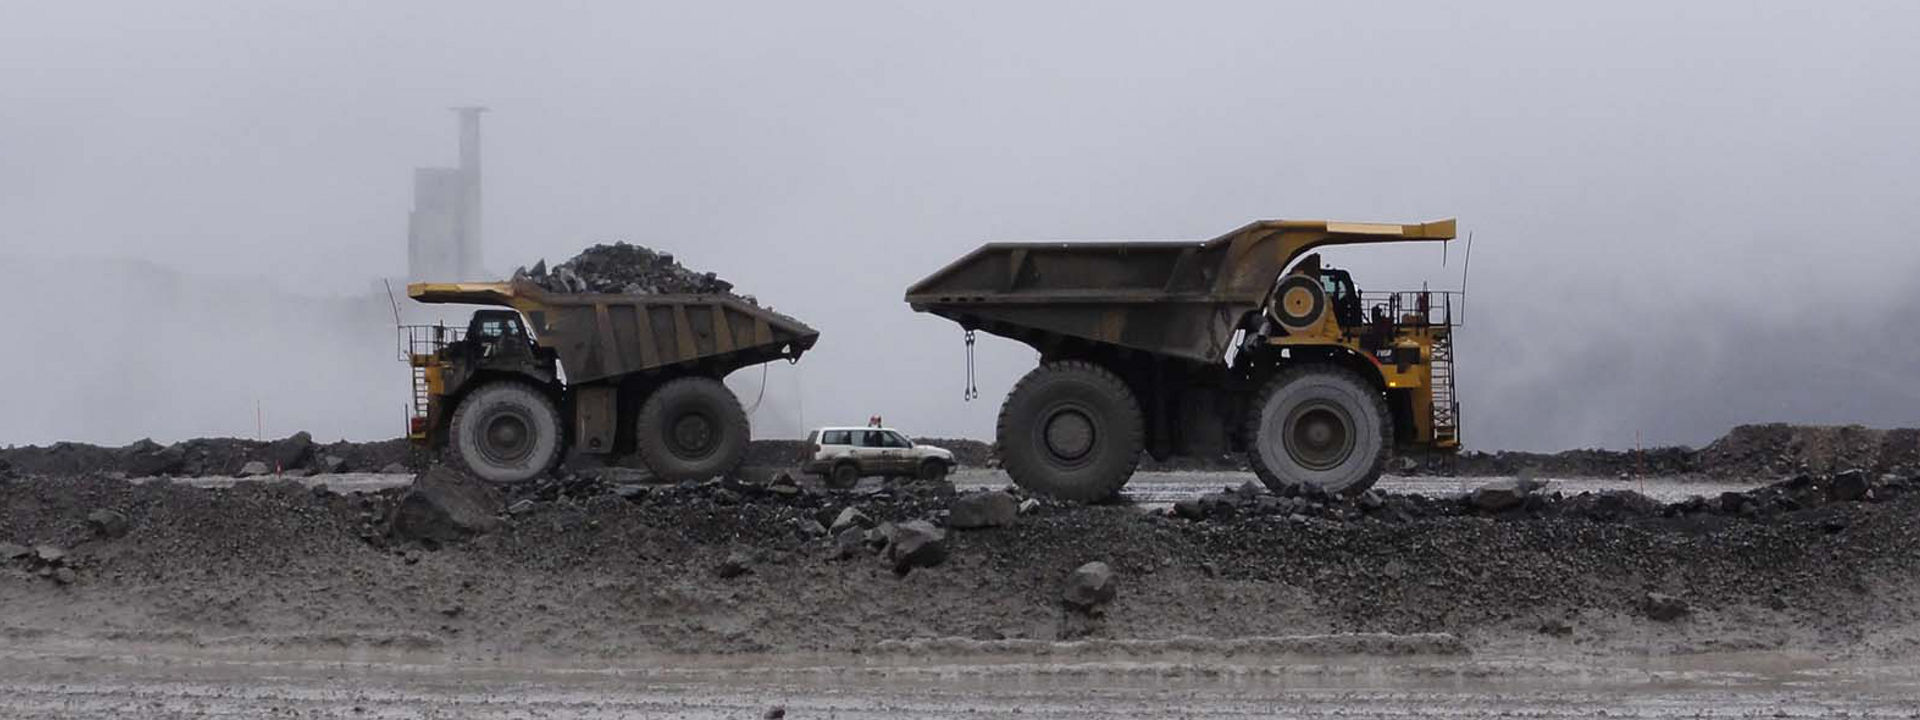 Quattro veicoli movimento terra equipaggiati con pneumatici Bridgestone al lavoro in una miniera a cielo aperto